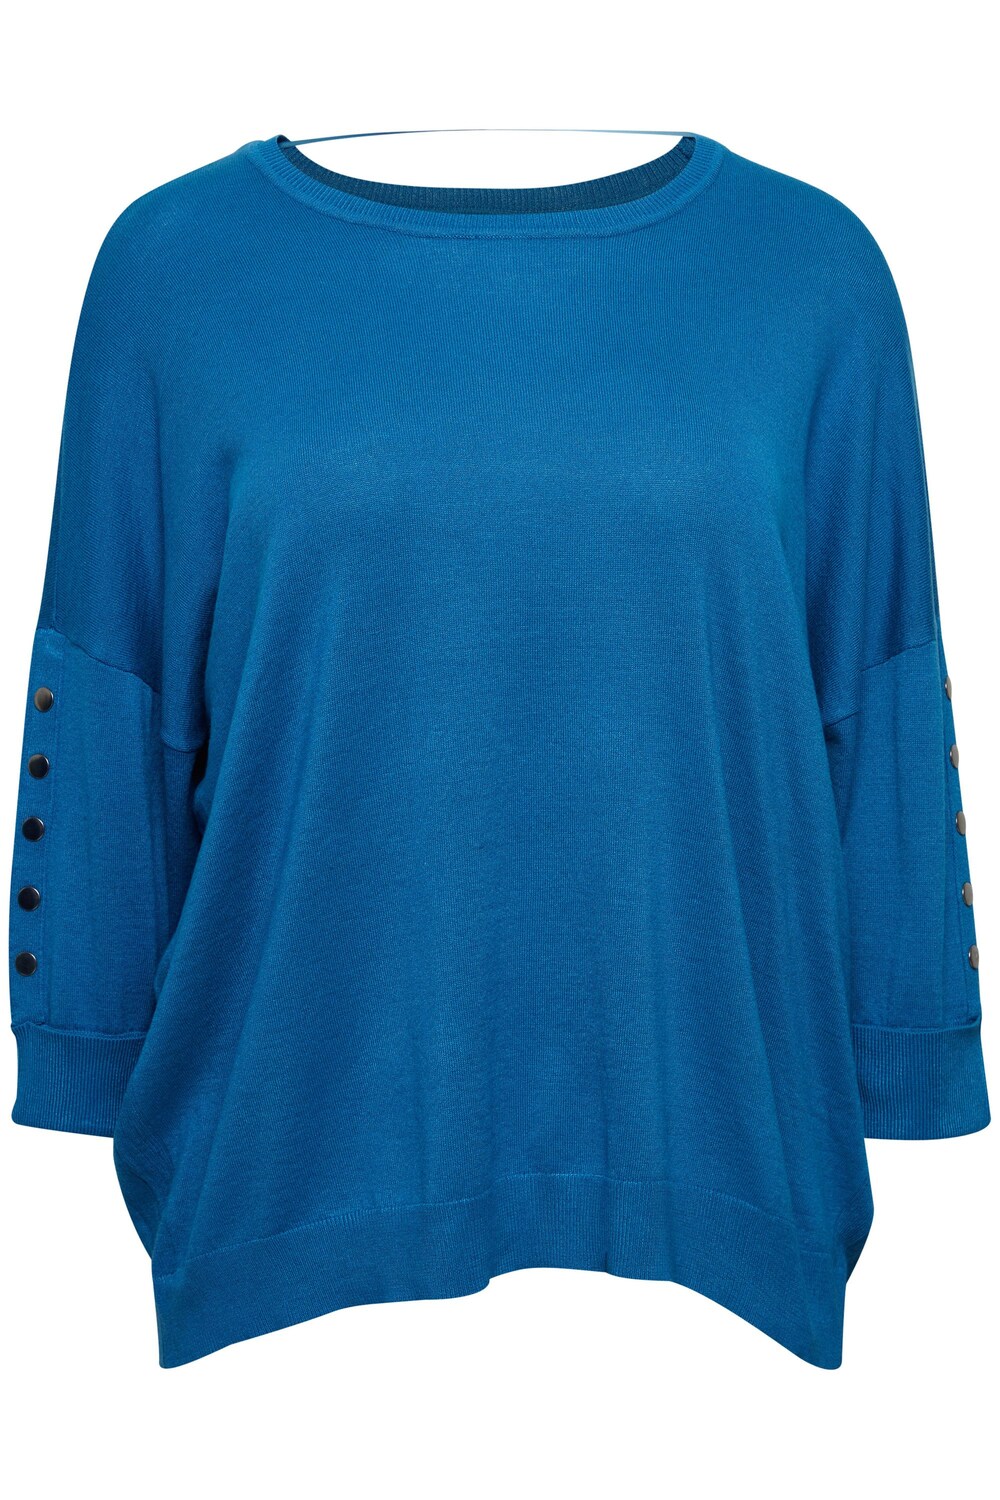 Рубашка Fransa Curve, синий рубашка платье fransa curve elise розовый